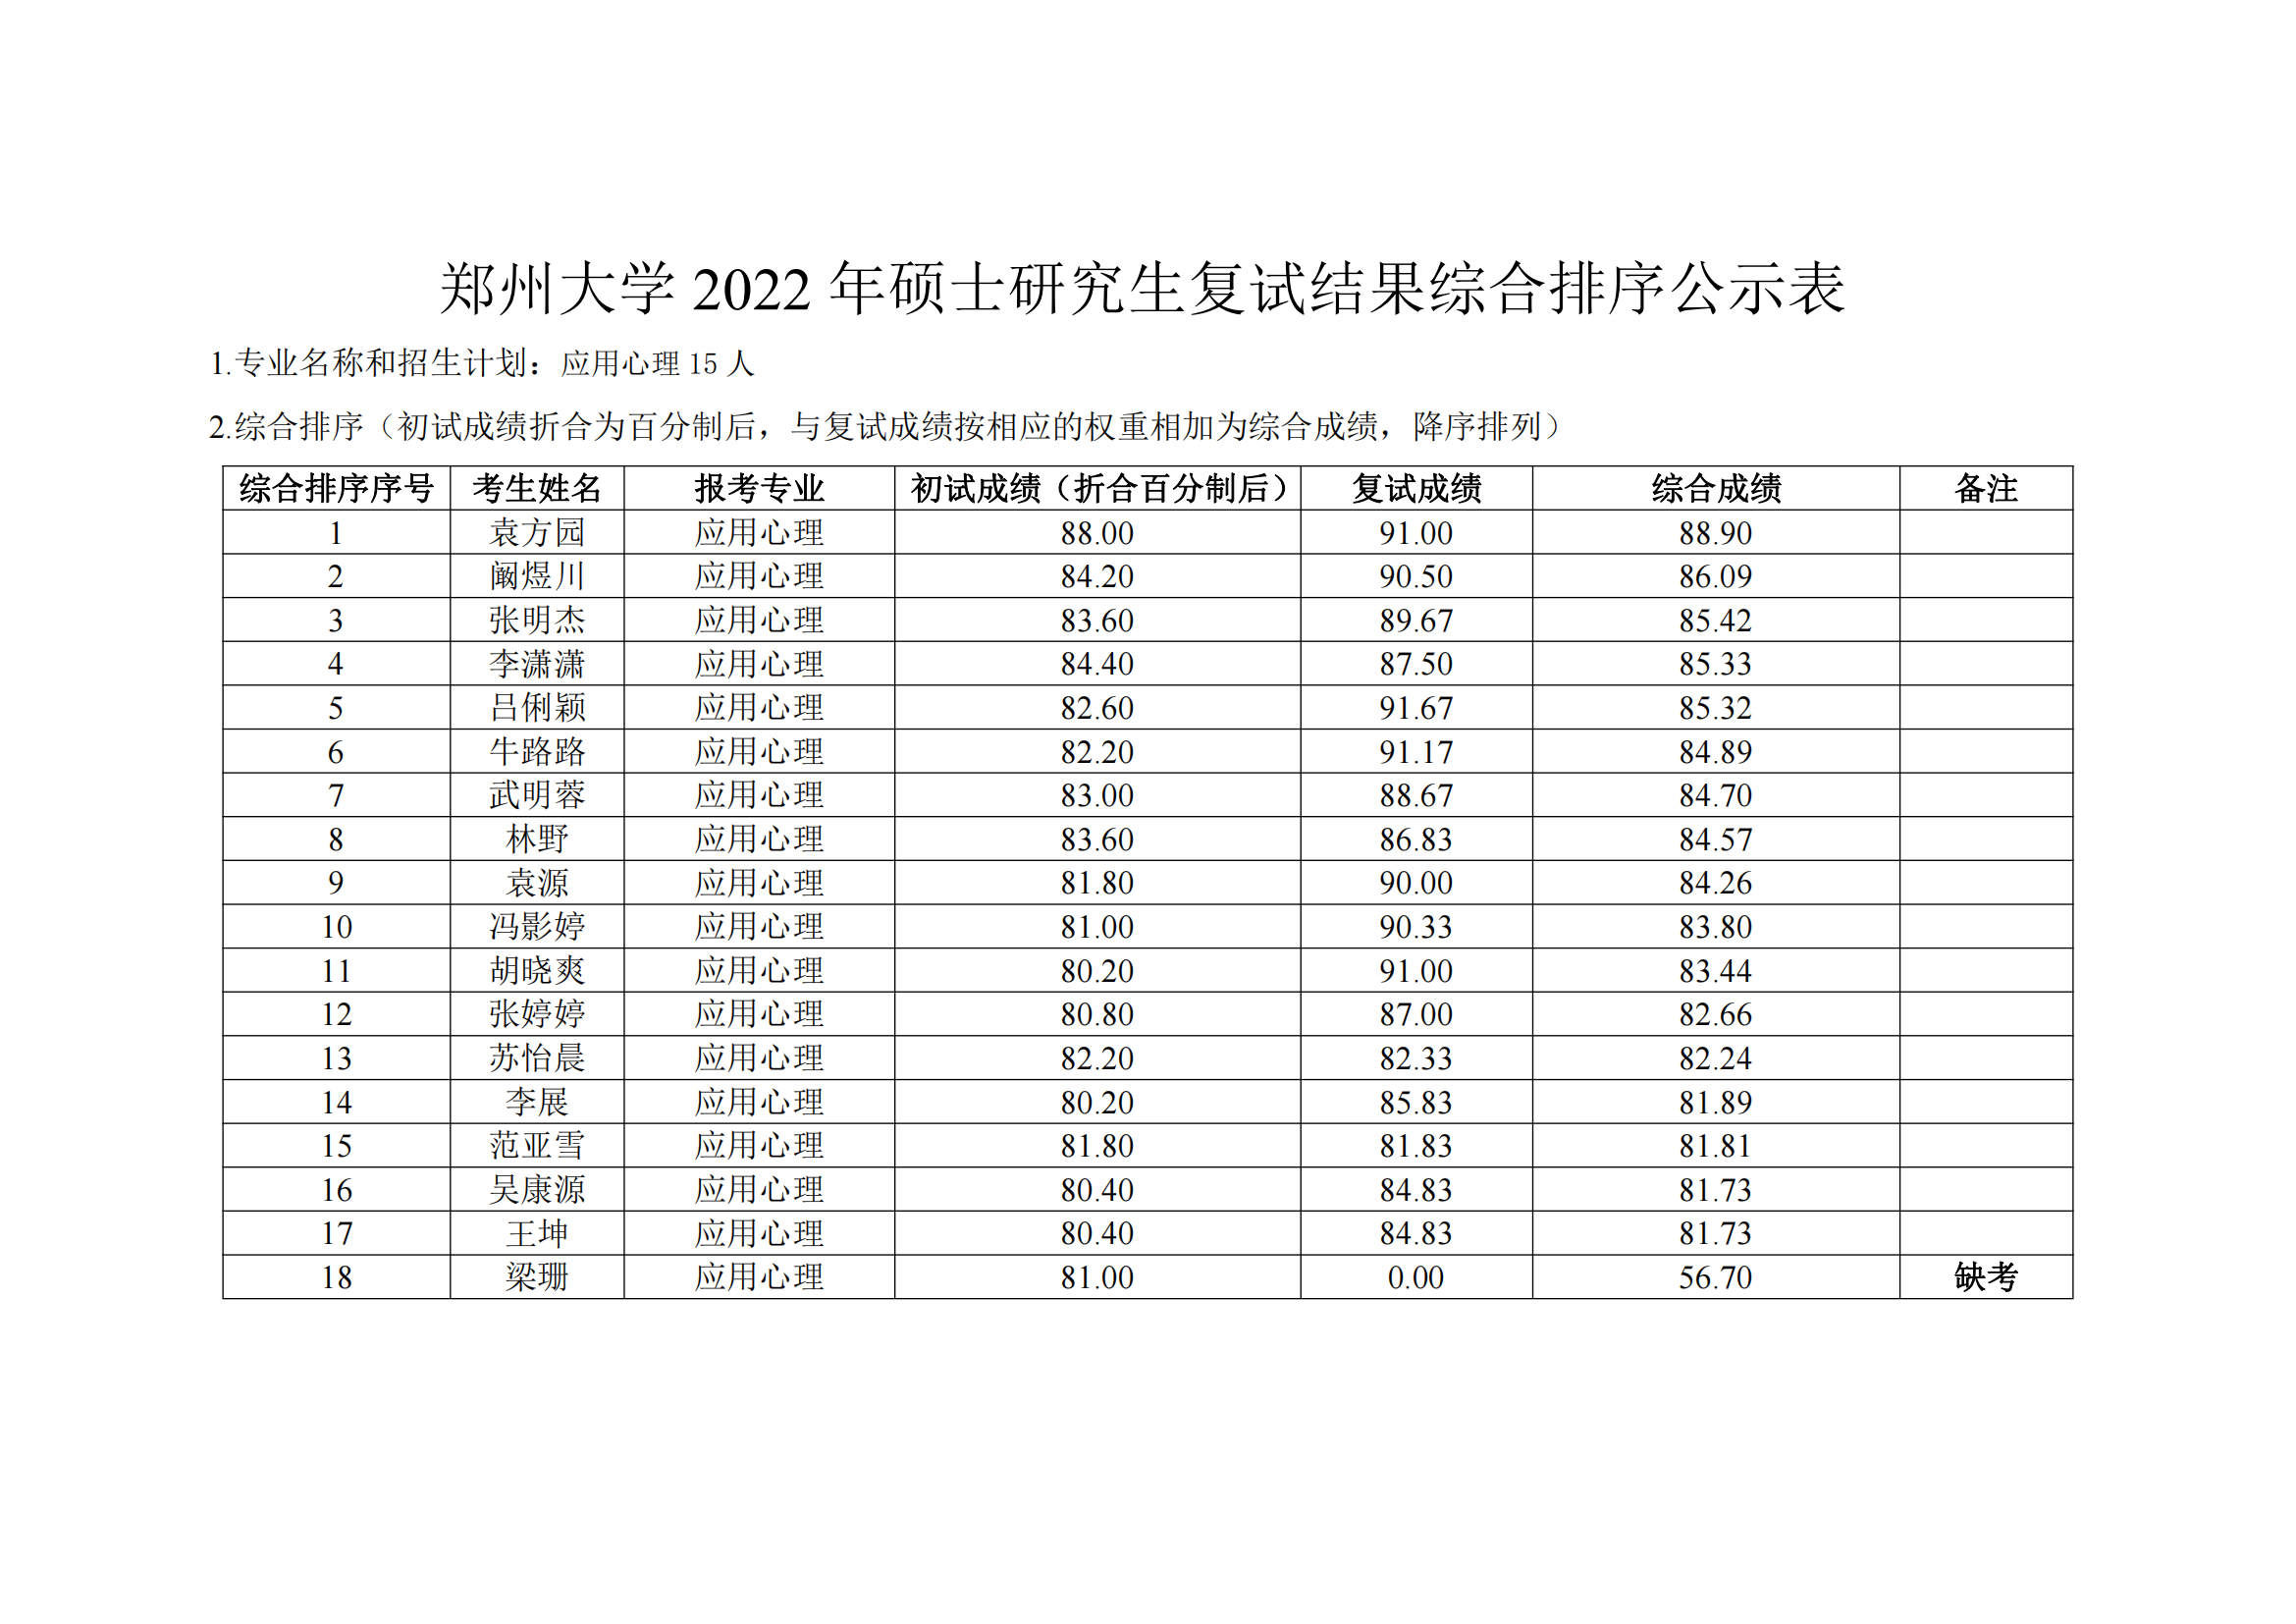 郑州大学教育学院2022年硕士研究生复试结果综合排序公示表_09.png